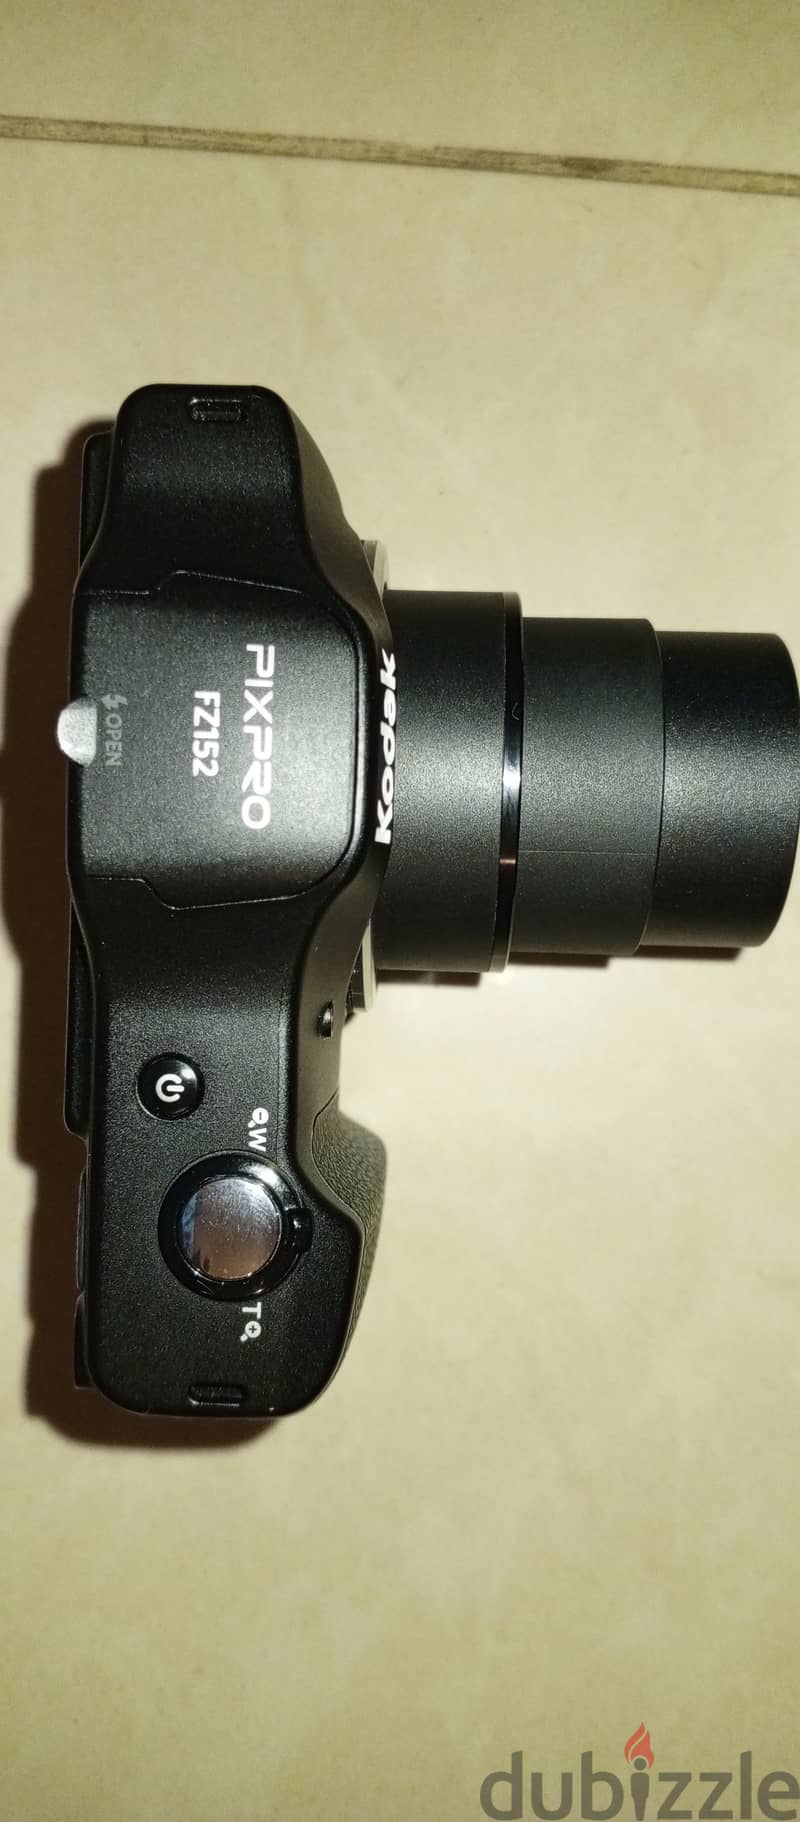 Kodak PixPro fz152 5